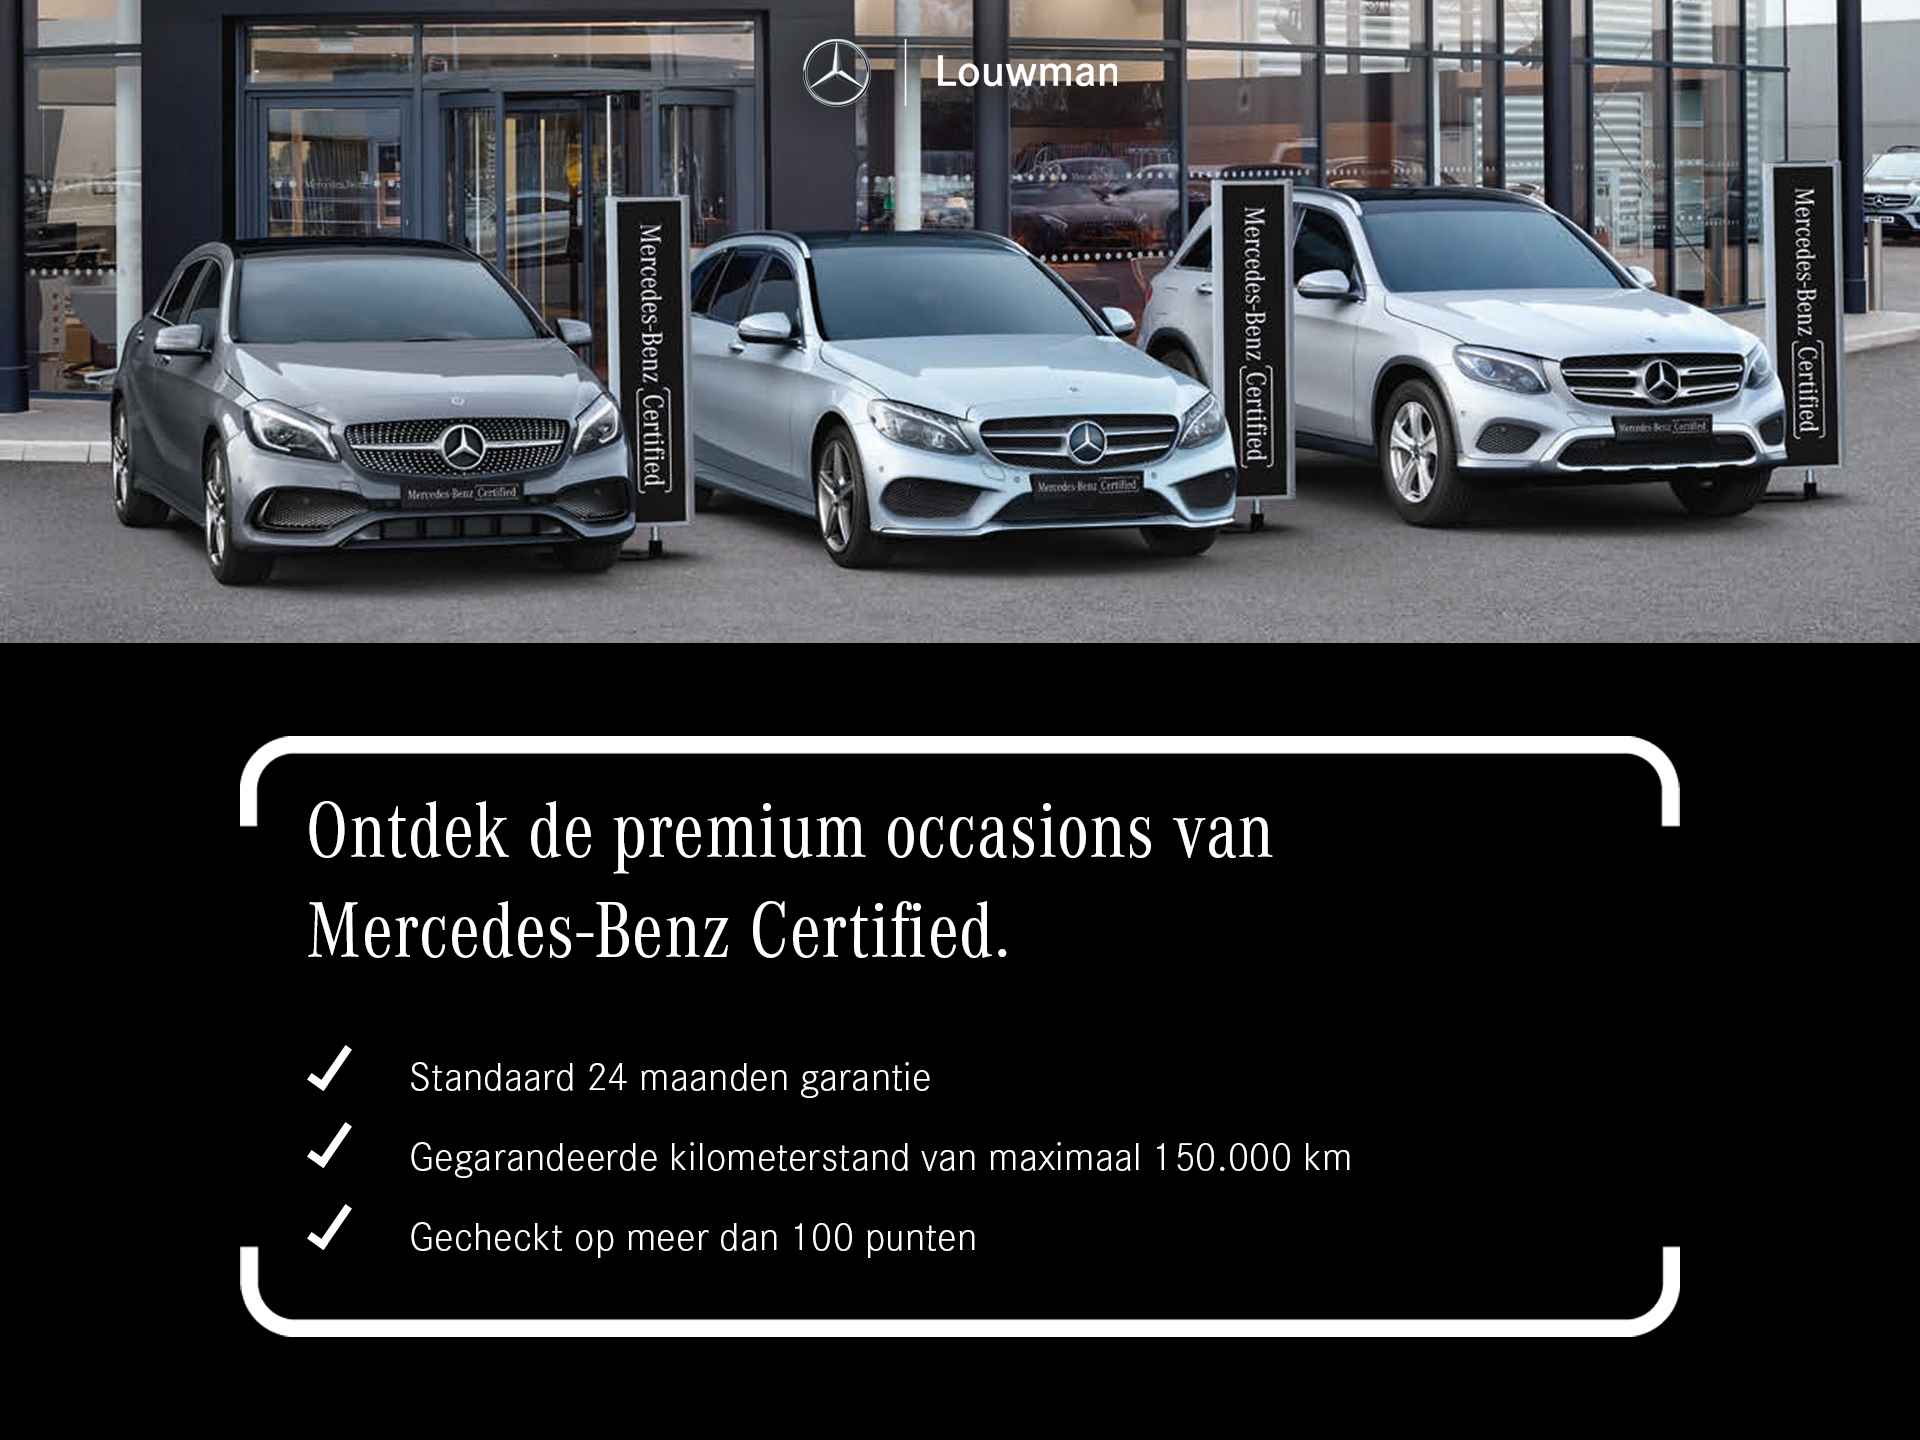 Mercedes-Benz C-Klasse 180 Business Solution AMG | 5 spaaks lichtmetalen velgen | Navigatie | Panoramadak | AMG Styling | Achteruitrijcamera | LED Koplampen | Inclusief 24 maanden MB Certified garantie voor europa. - 49/50